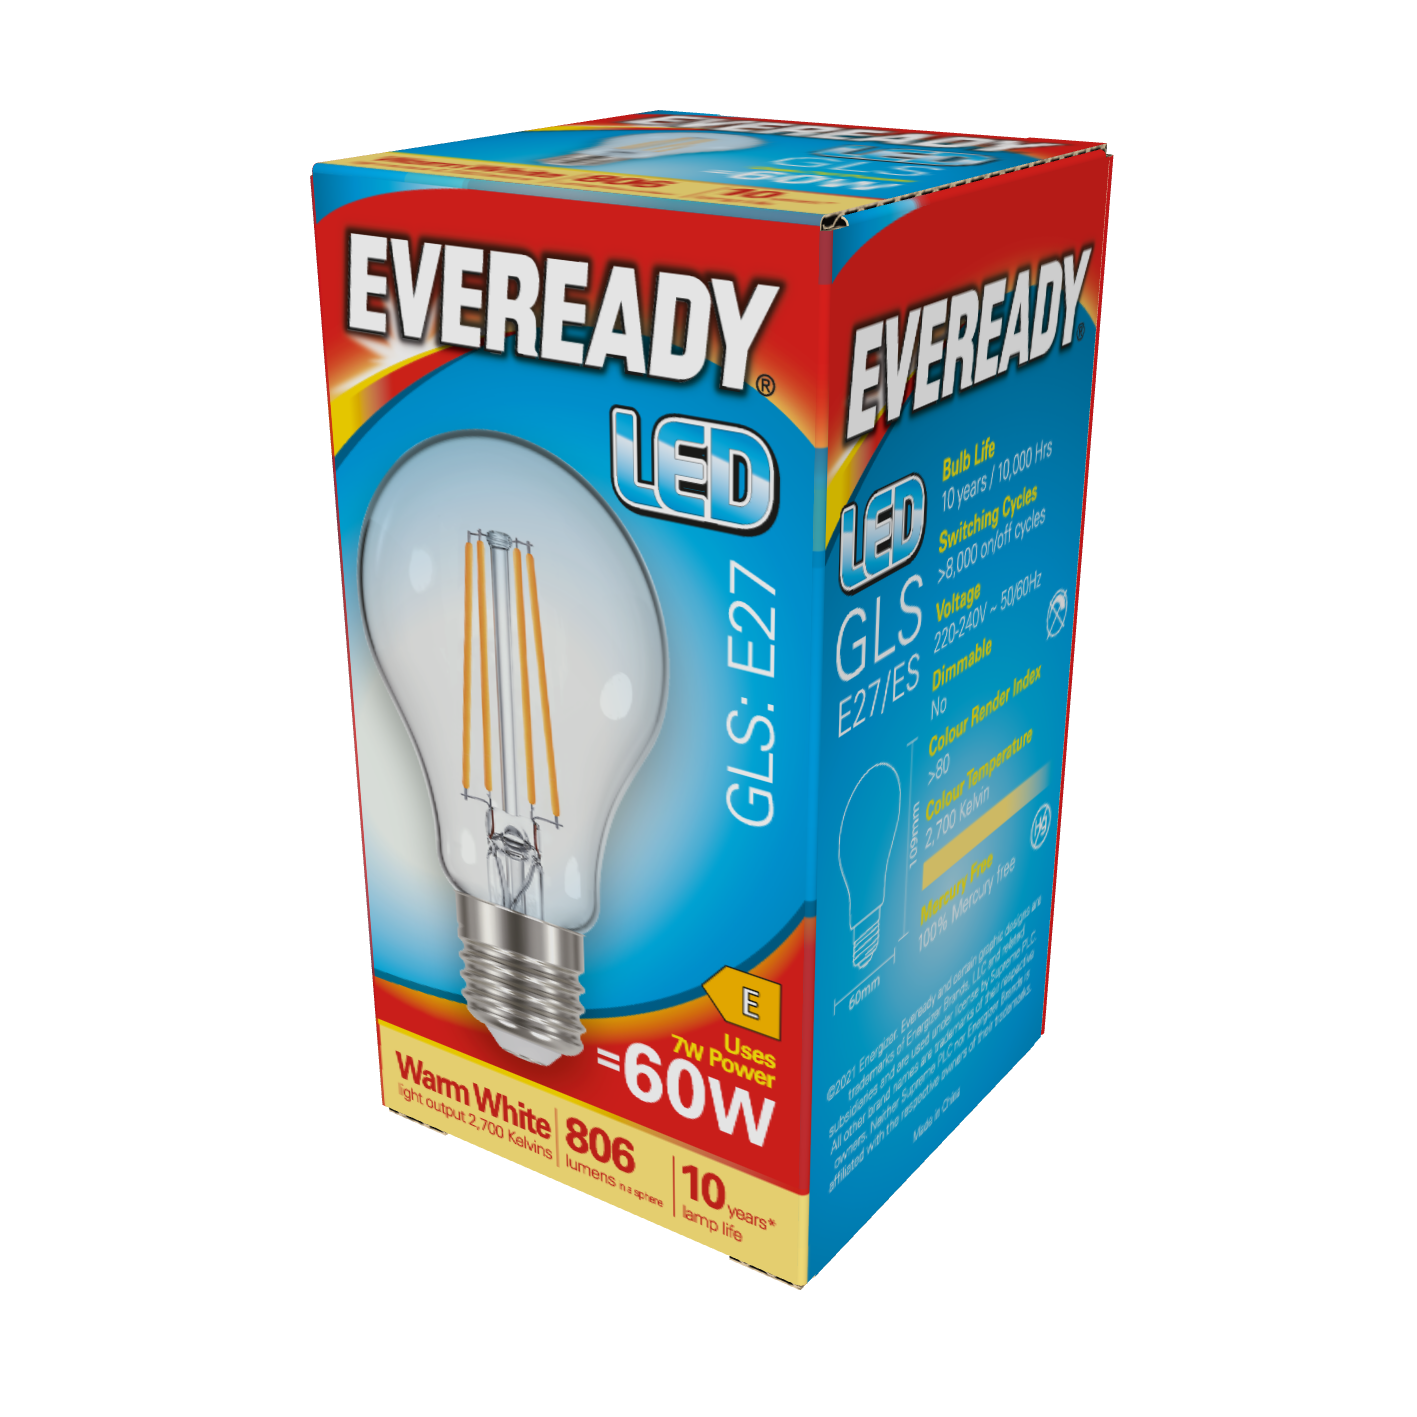 Eveready LED E27 (ES) GLS 806lm 7W 2.700K (Warmweiß), Packung mit 1 Stück